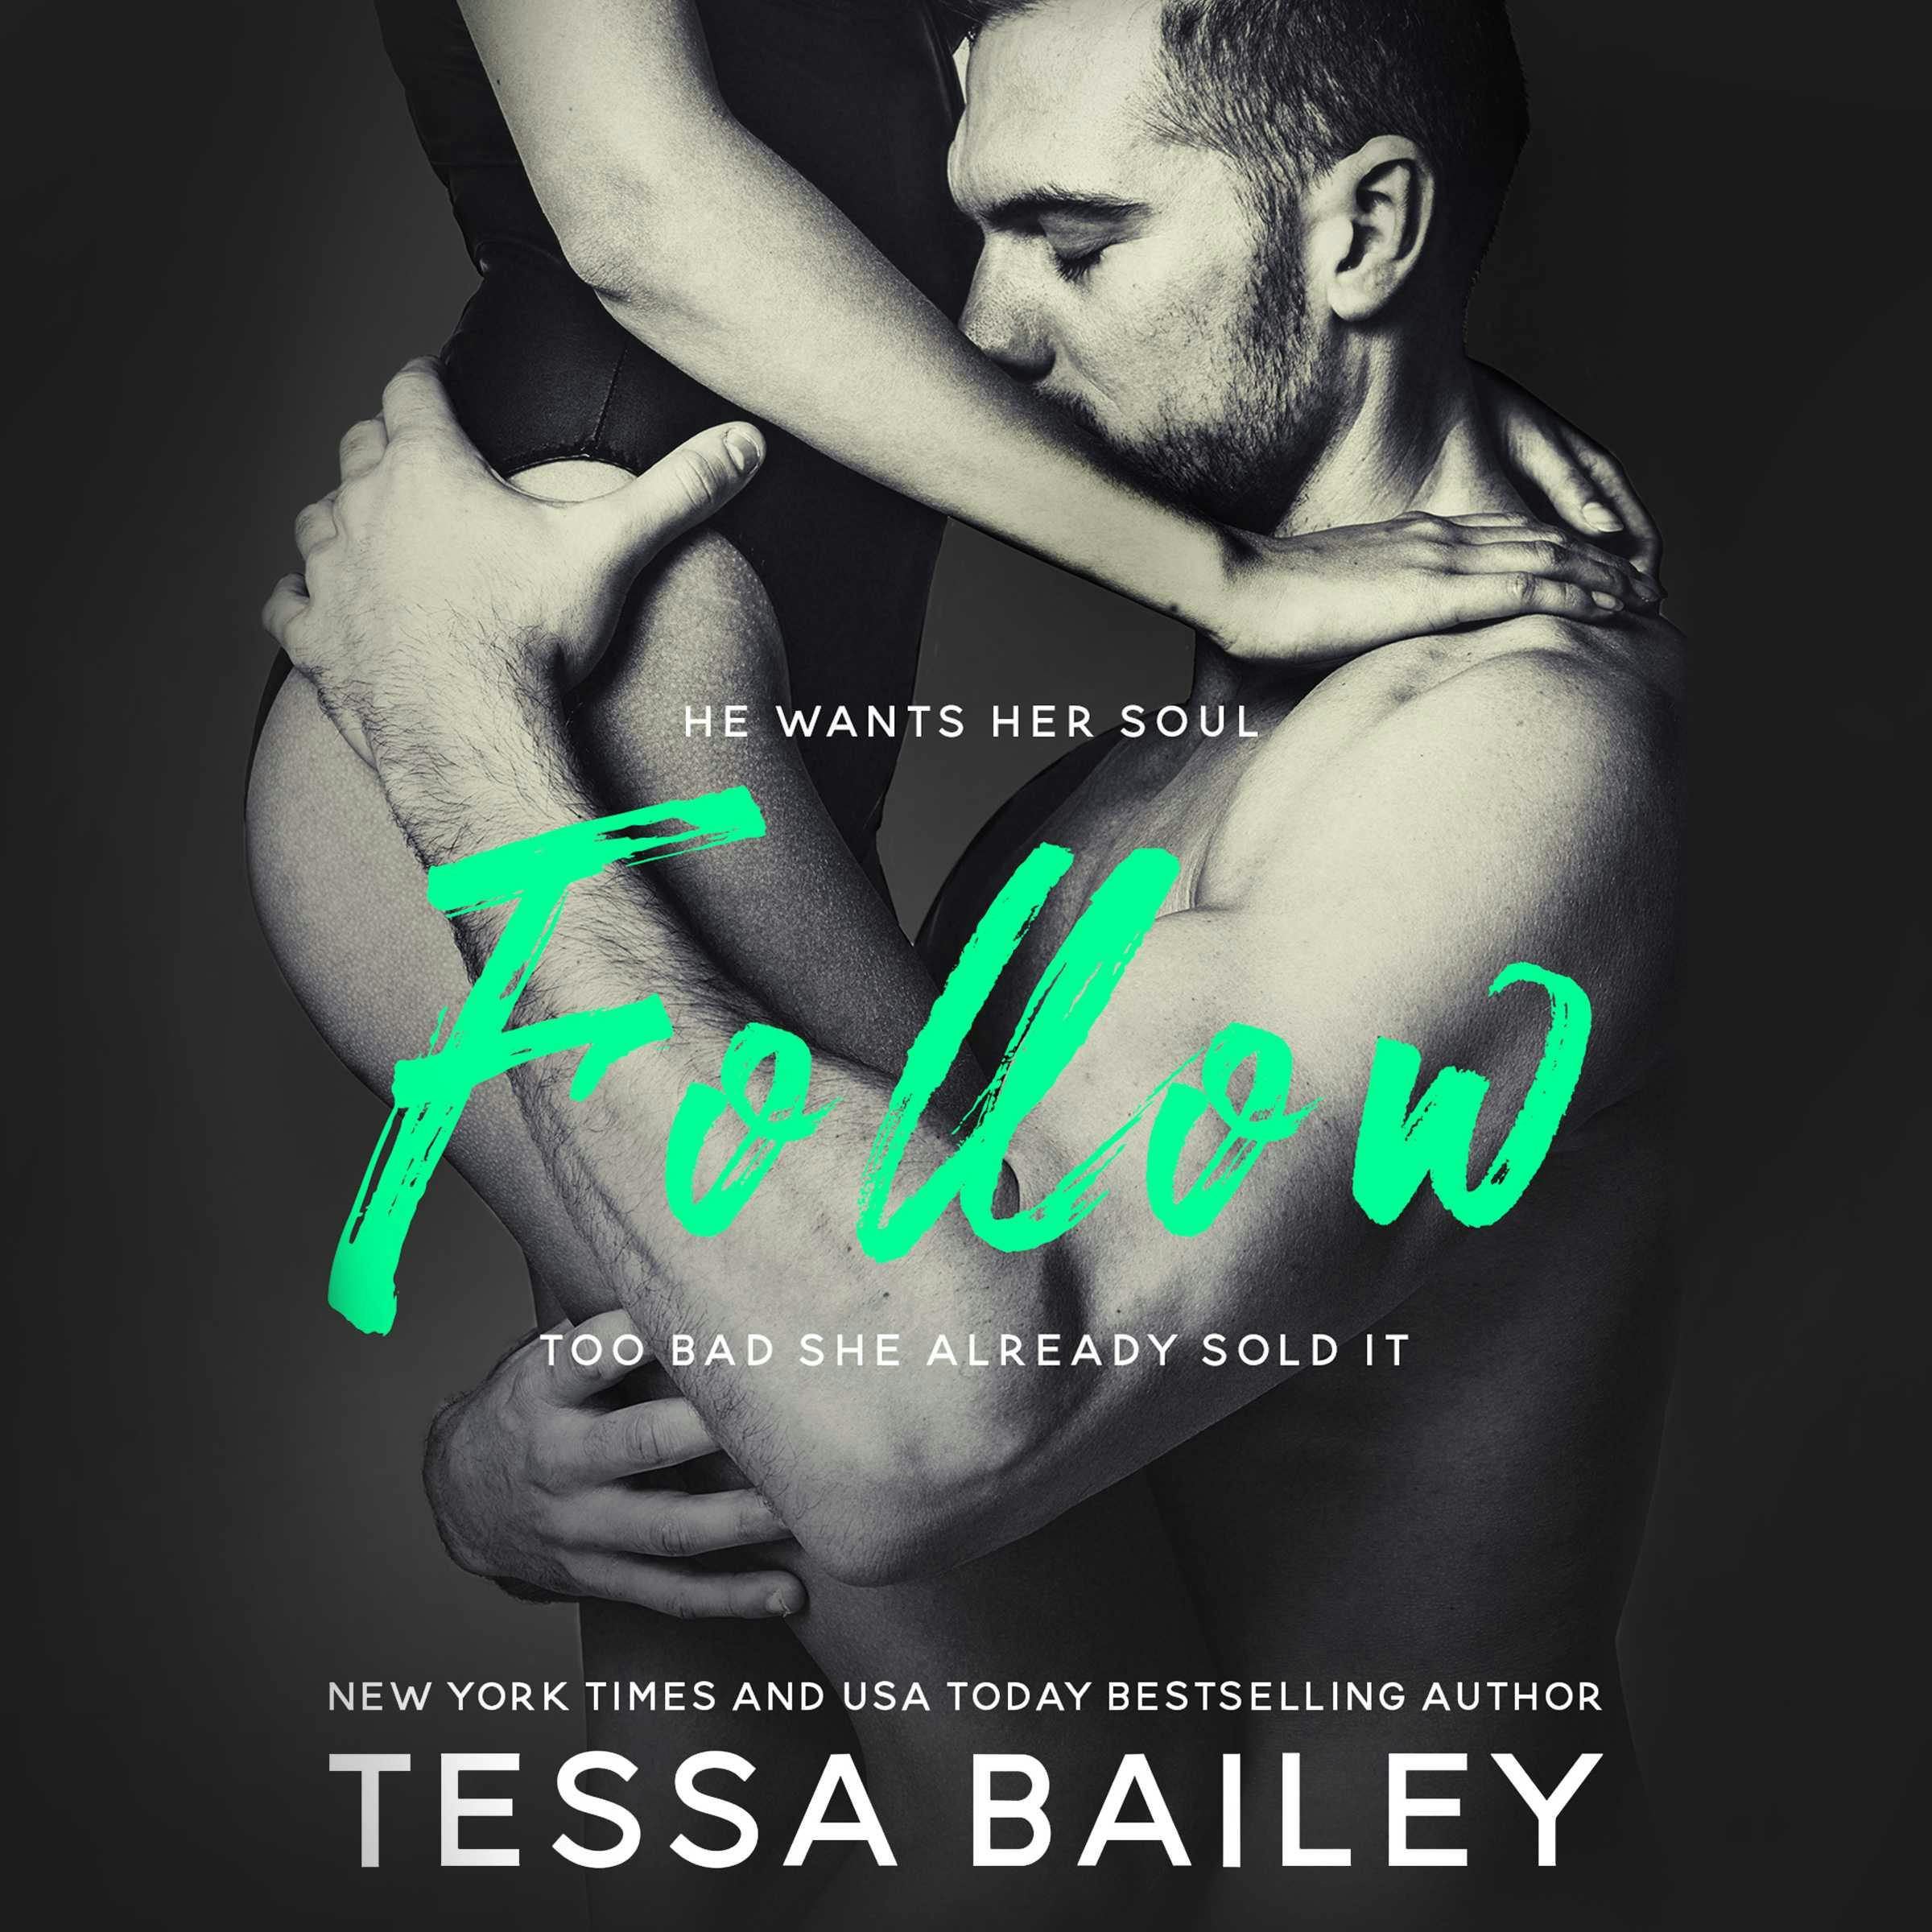 Follow - Tessa Bailey